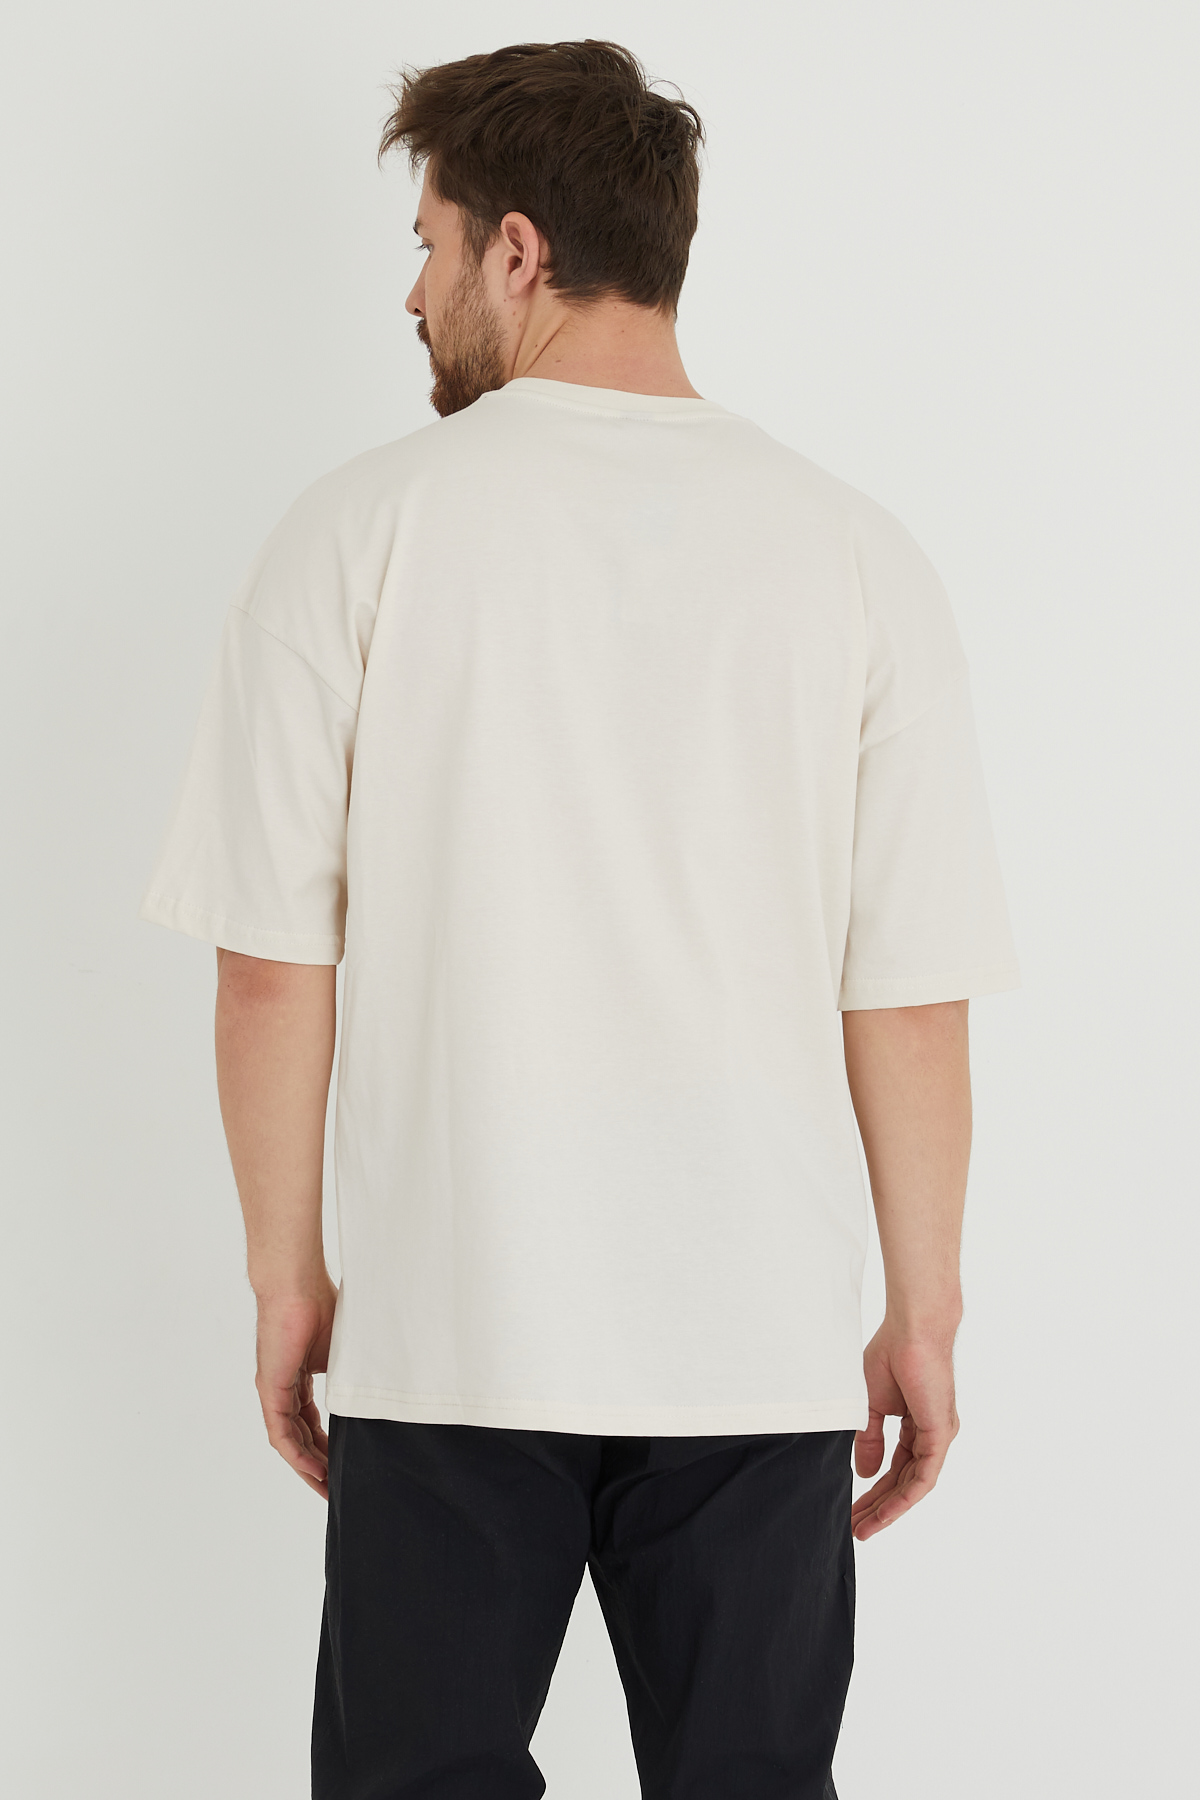 Taş Rengi Baskılı Oversize Tişört 1KXE1-44634-56 - 5